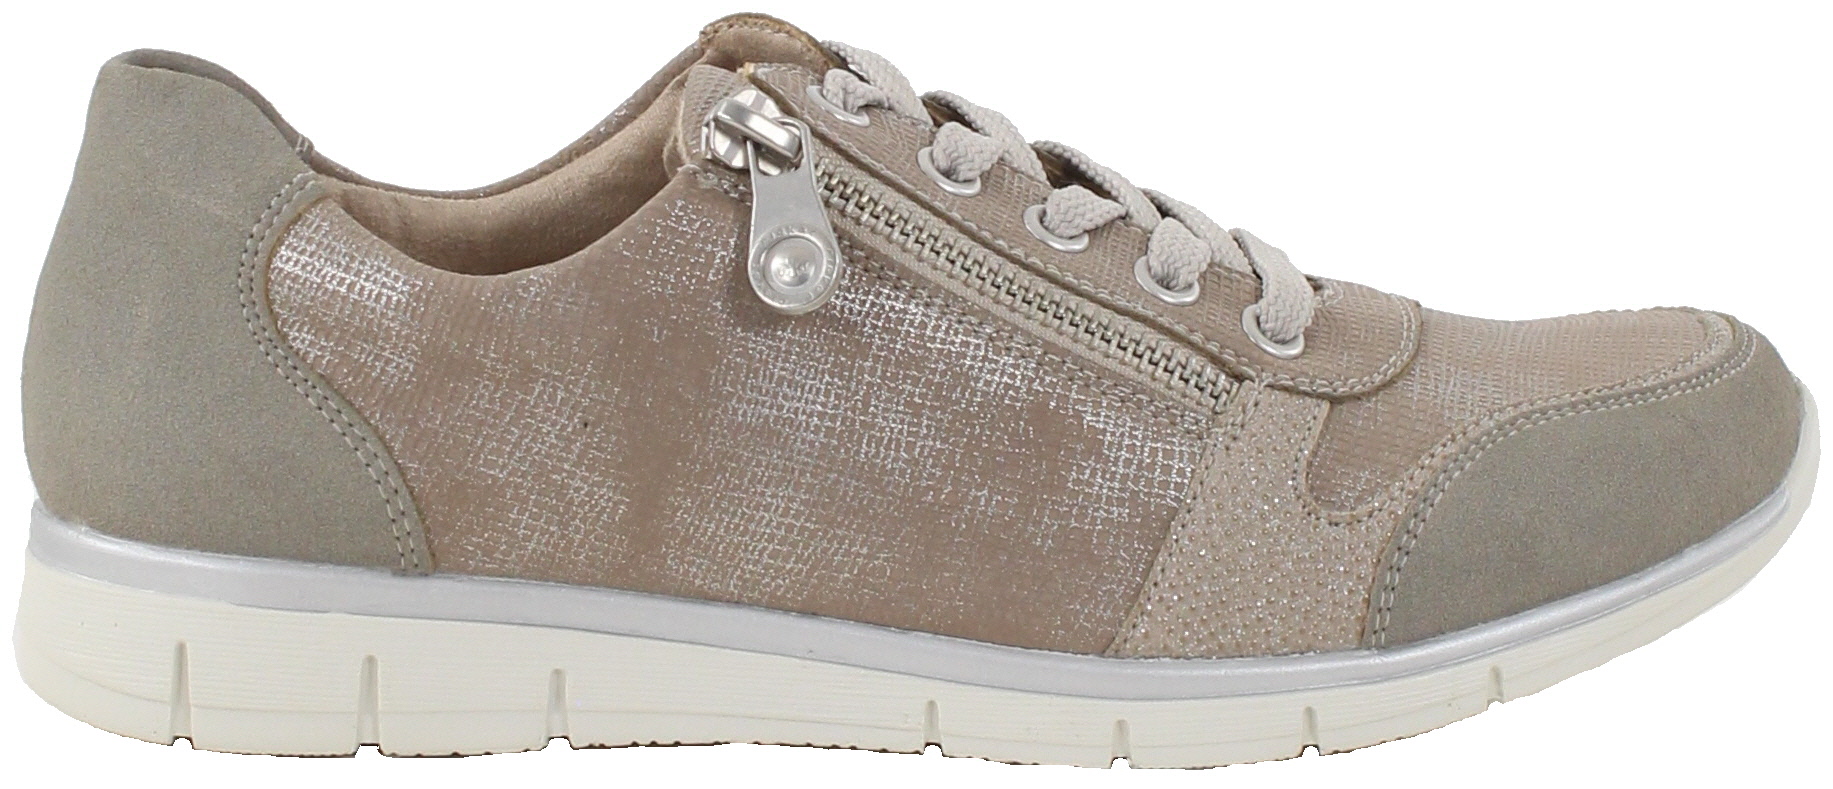 Rieker Walking shoes N4020-40 grey - Stilettoshop.eu webstore